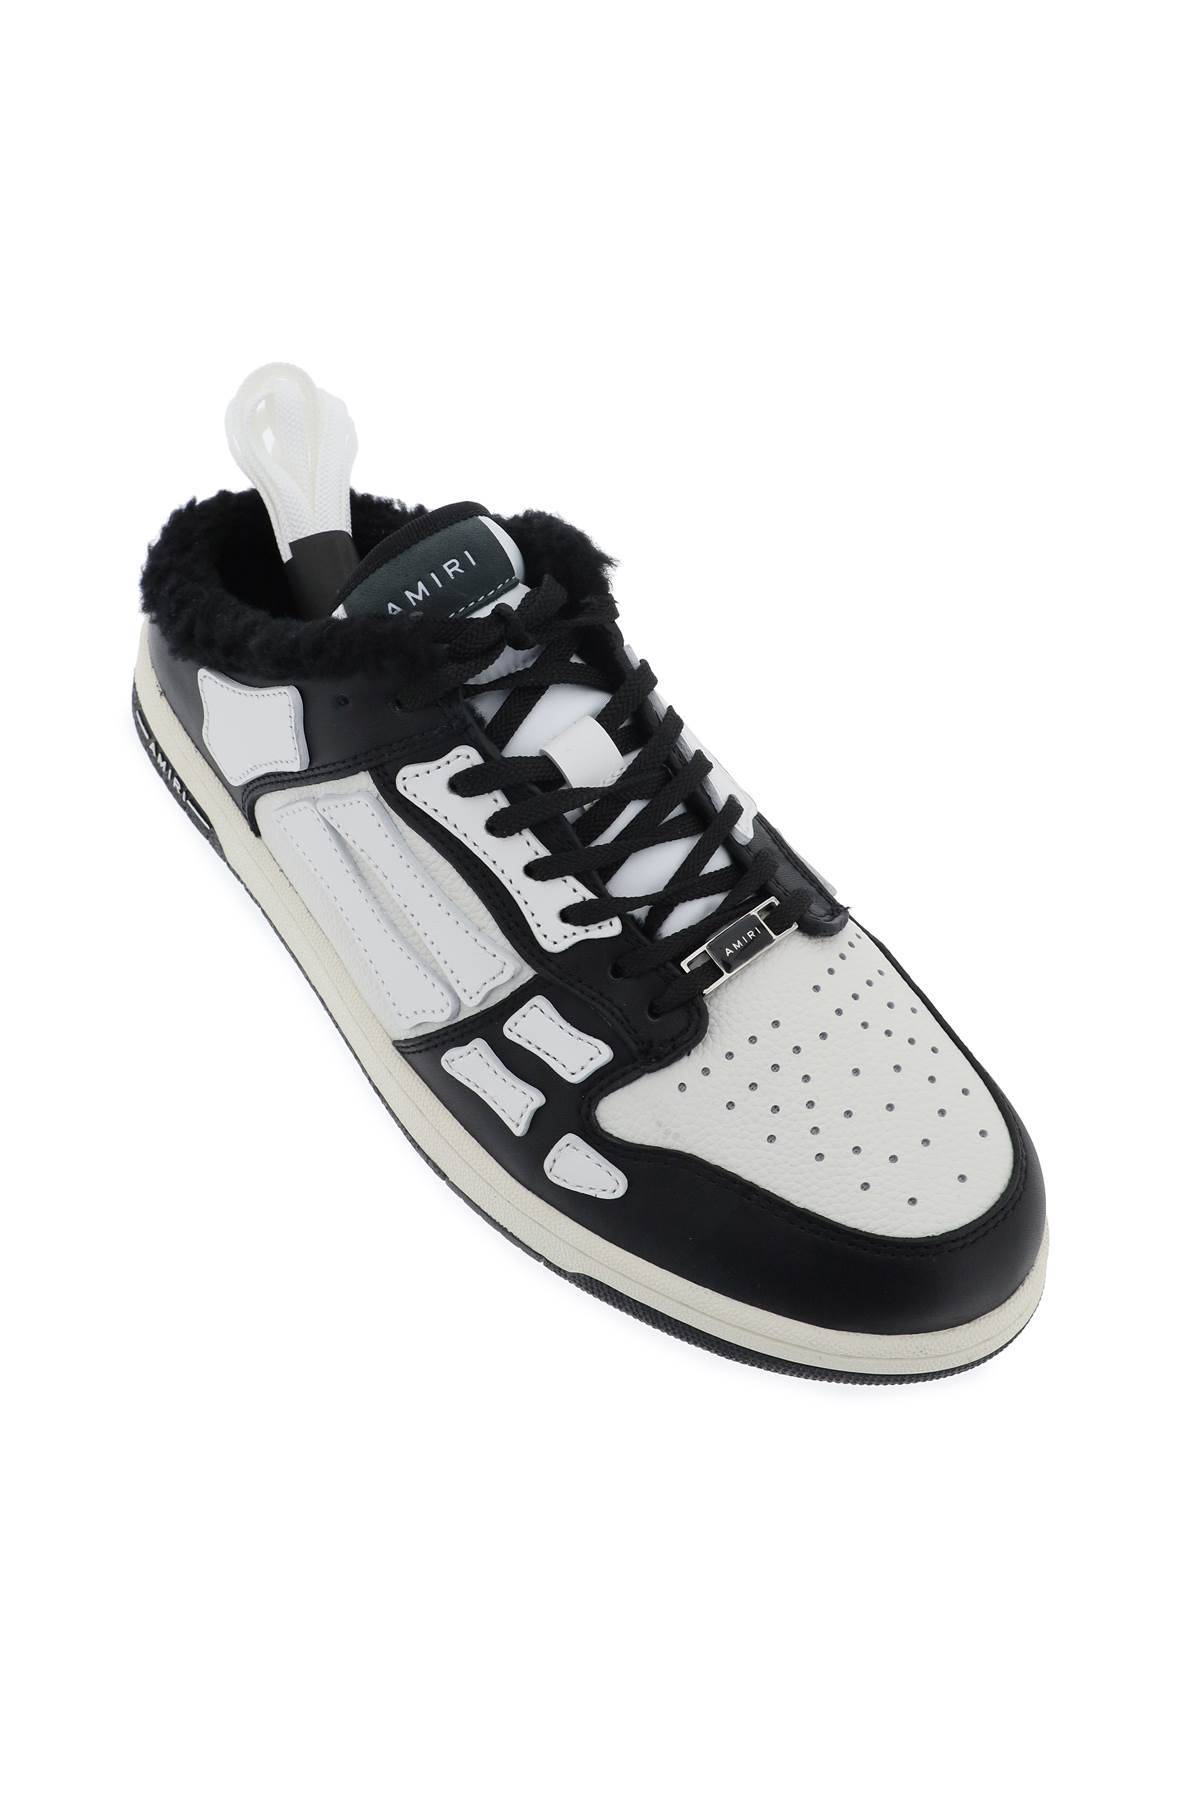 Shop Amiri Skeltop Mule Sneakers In White,black